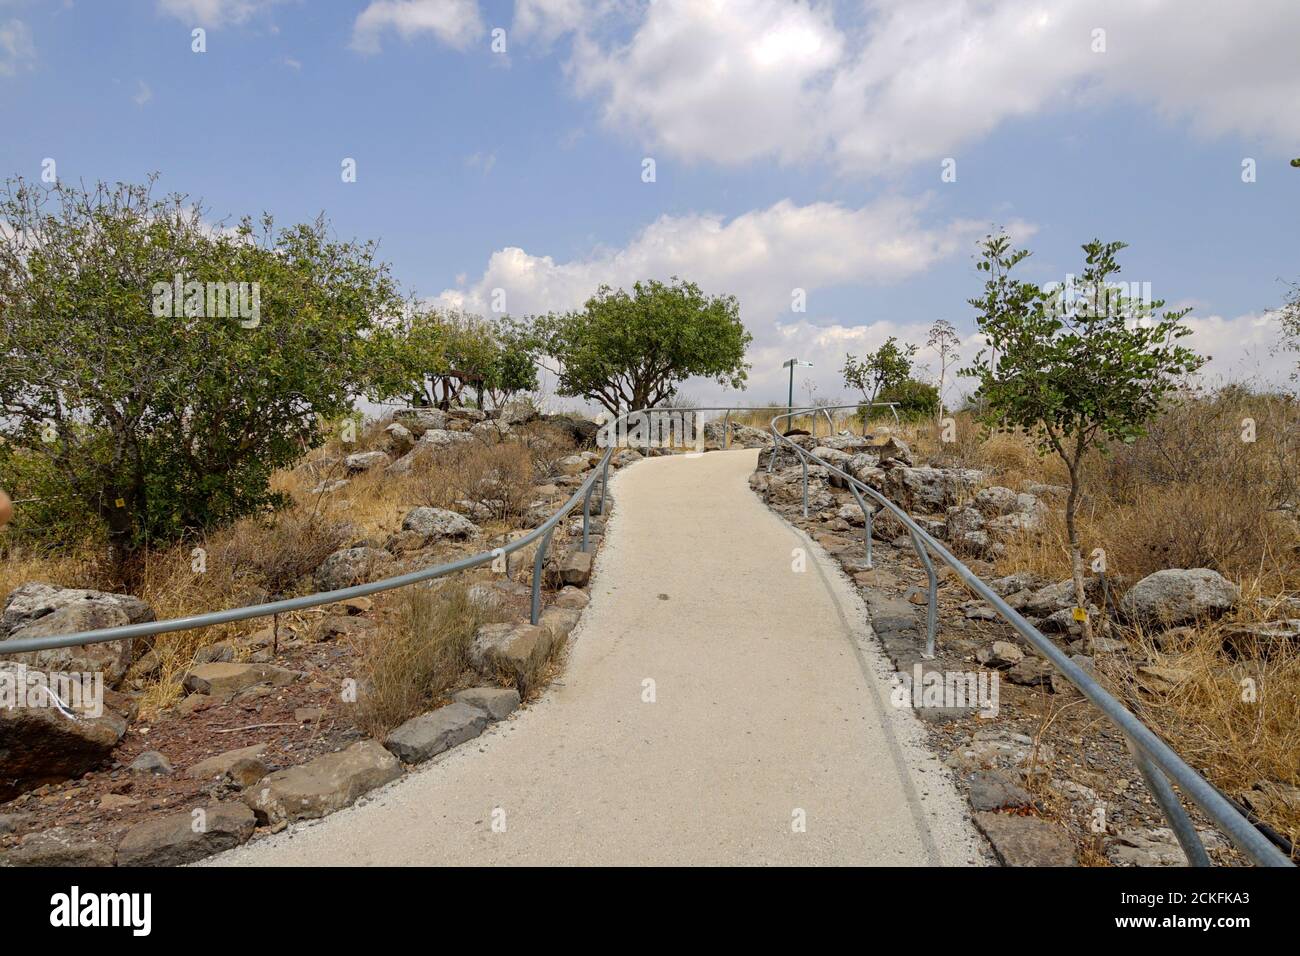 Gamla deuxième période du Temple, ancienne ville juive sur les hauteurs du Golan, Israël Banque D'Images